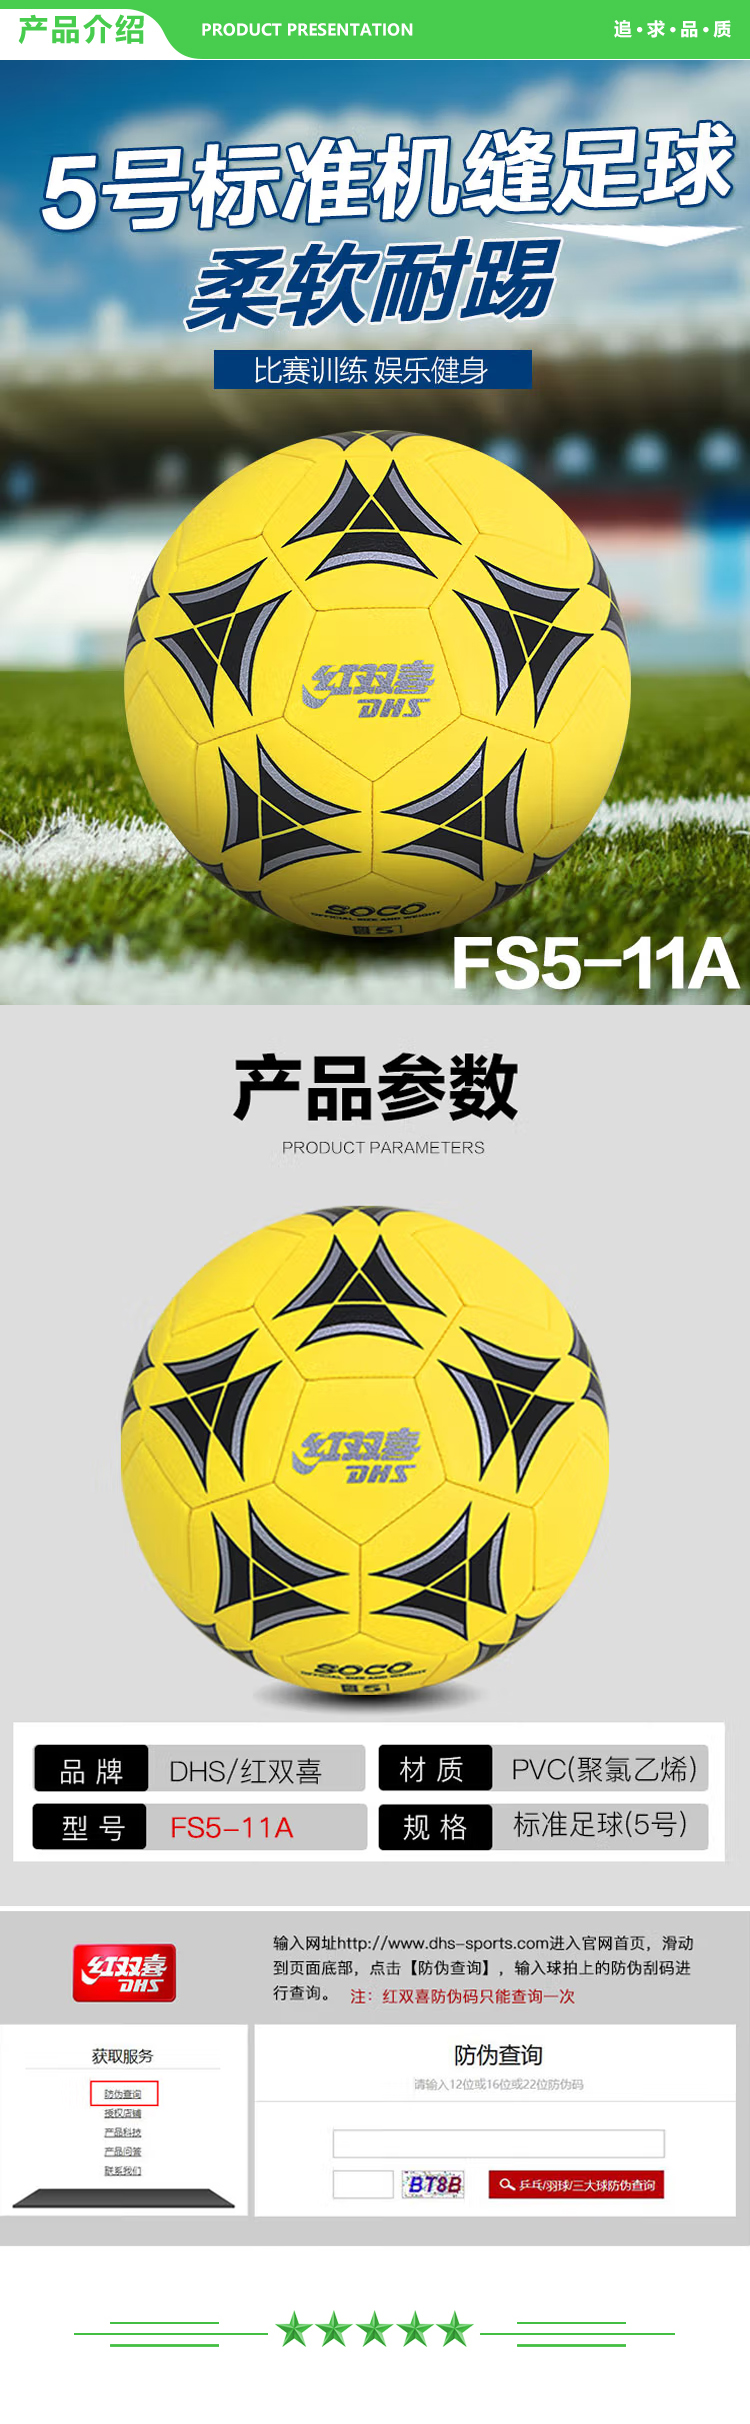 红双喜 DHS FS5-11A 米黄色 5号机缝比赛足球训练不易磨损柔软舒适 足球  (2).jpg